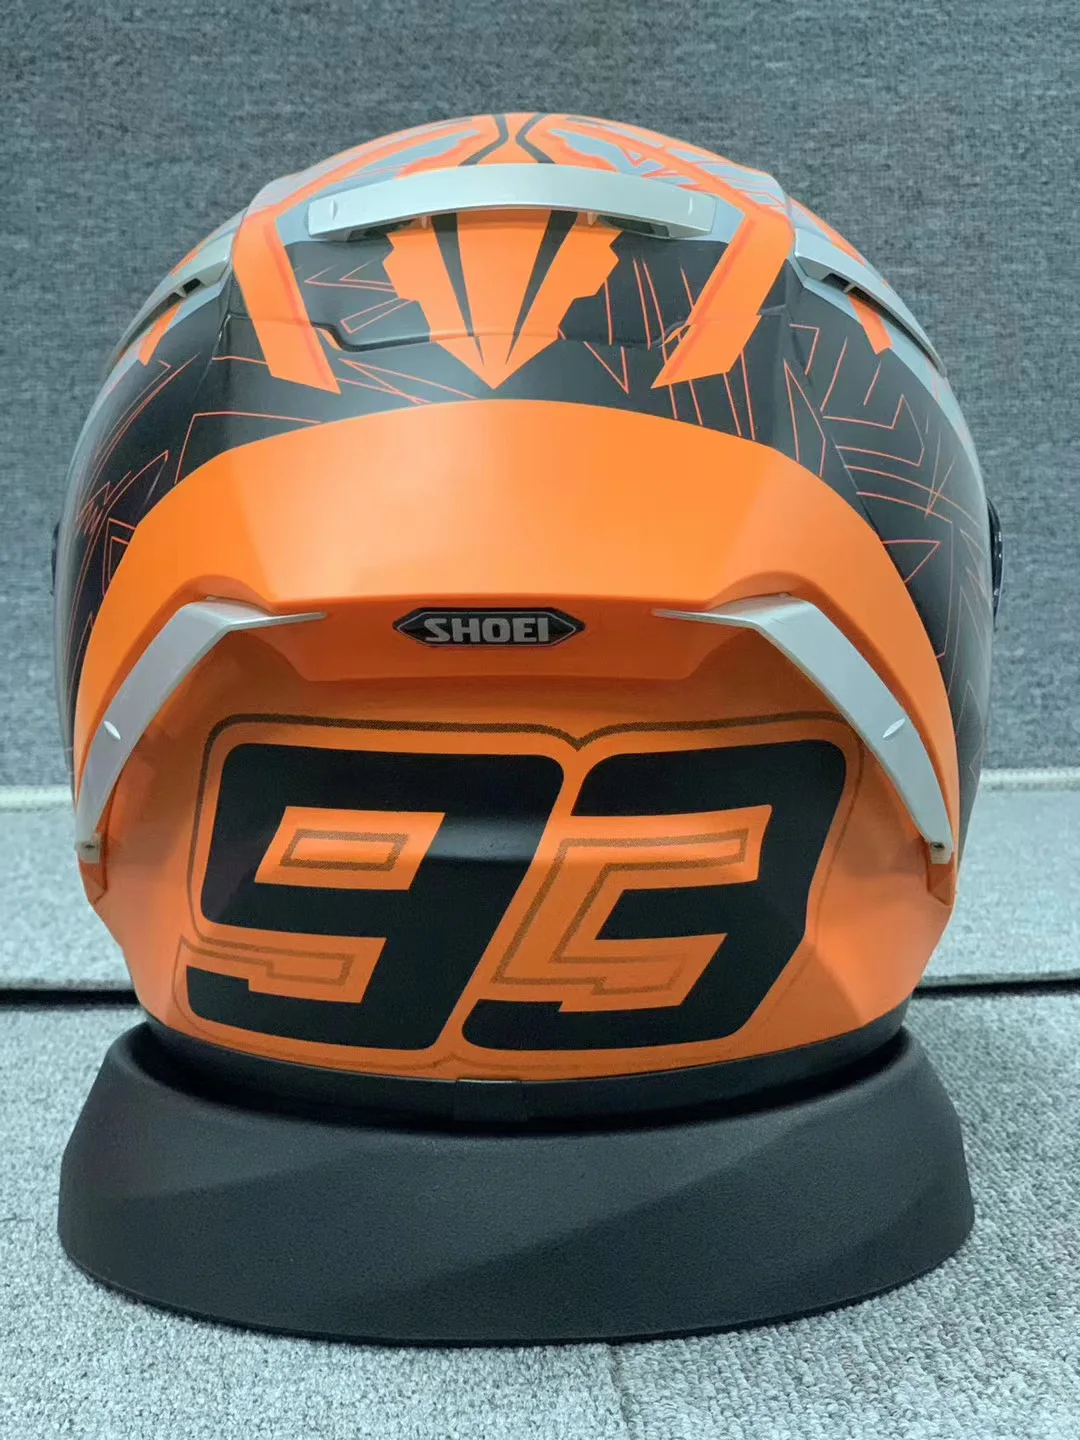 

Шлем мотоциклетный X14, шлем на все лицо, с красной катаной, X-четырнадцать, R1, 60-е юбилейное издание, для гонок